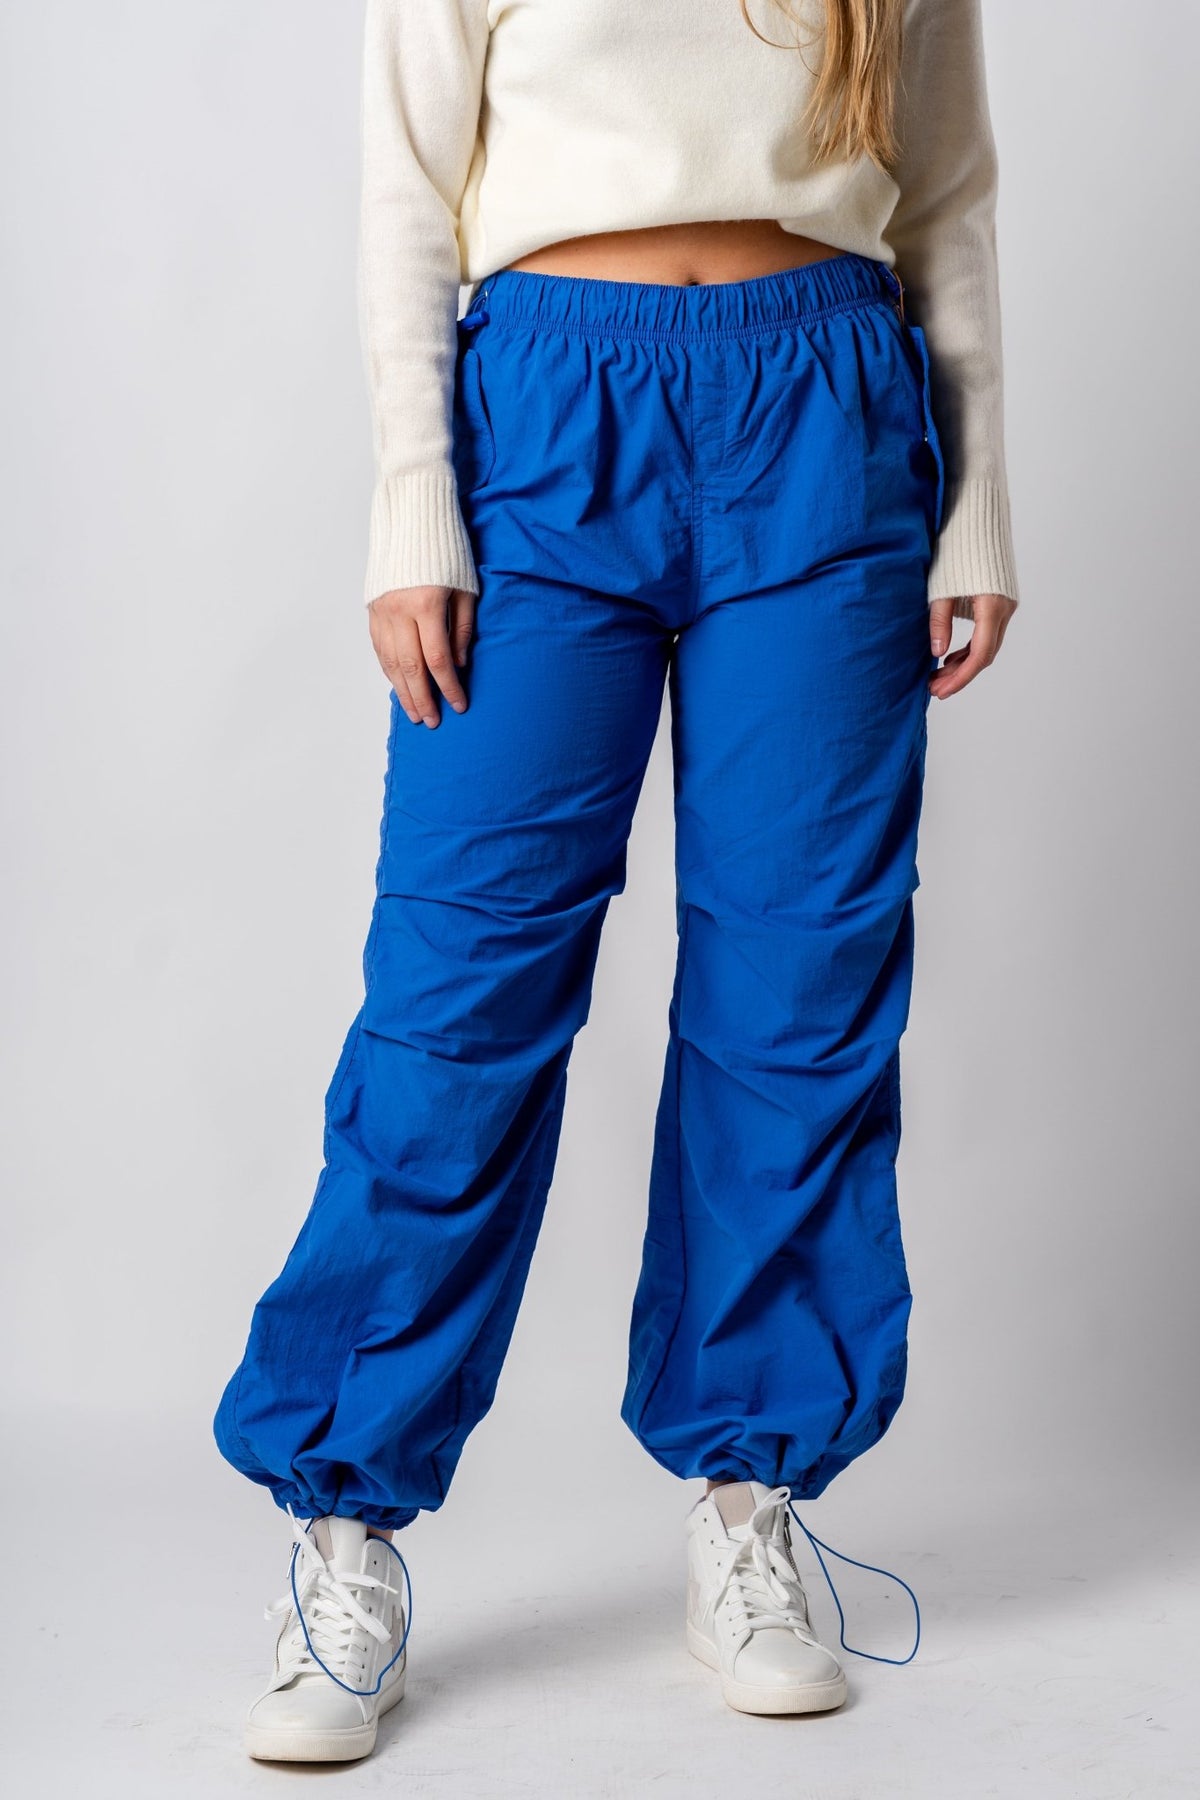 Ruched cargo pants azure | Lush Fashion Lounge: women's boutique pants, boutique women's pants, affordable boutique pants, women's fashion pants